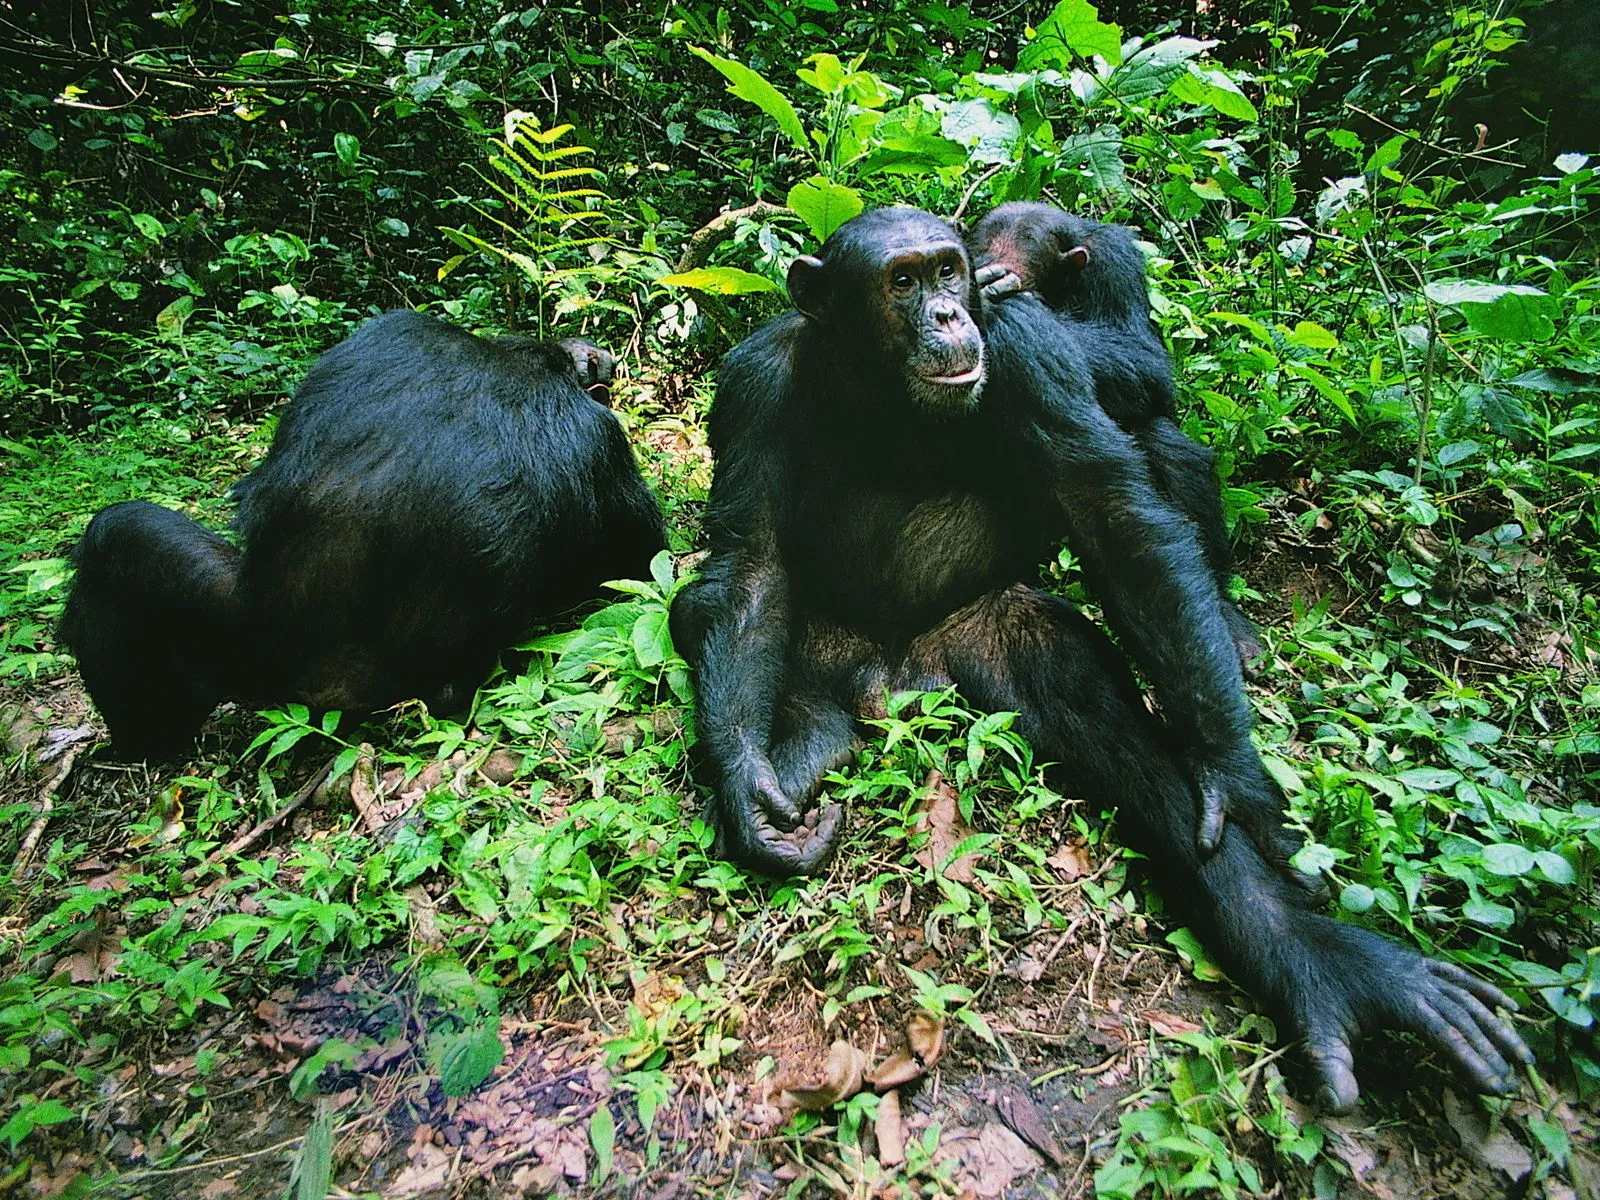 Fotos de monos en la selva para facebook Mejores fotos del mundo ...